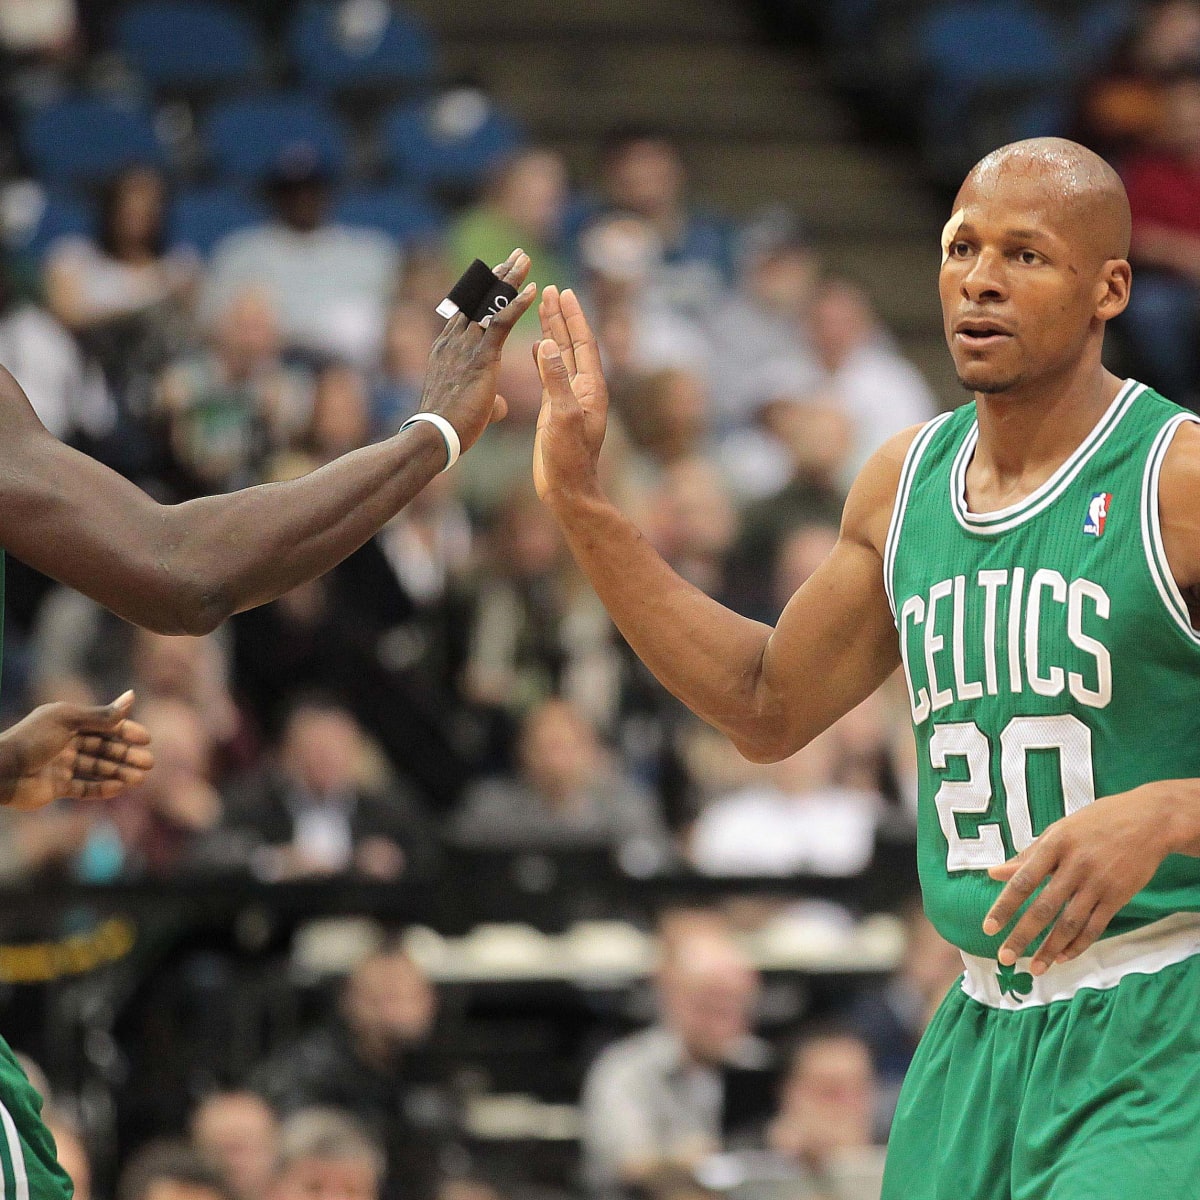 Boston Celtics will retire jersey of Kevin Garnett